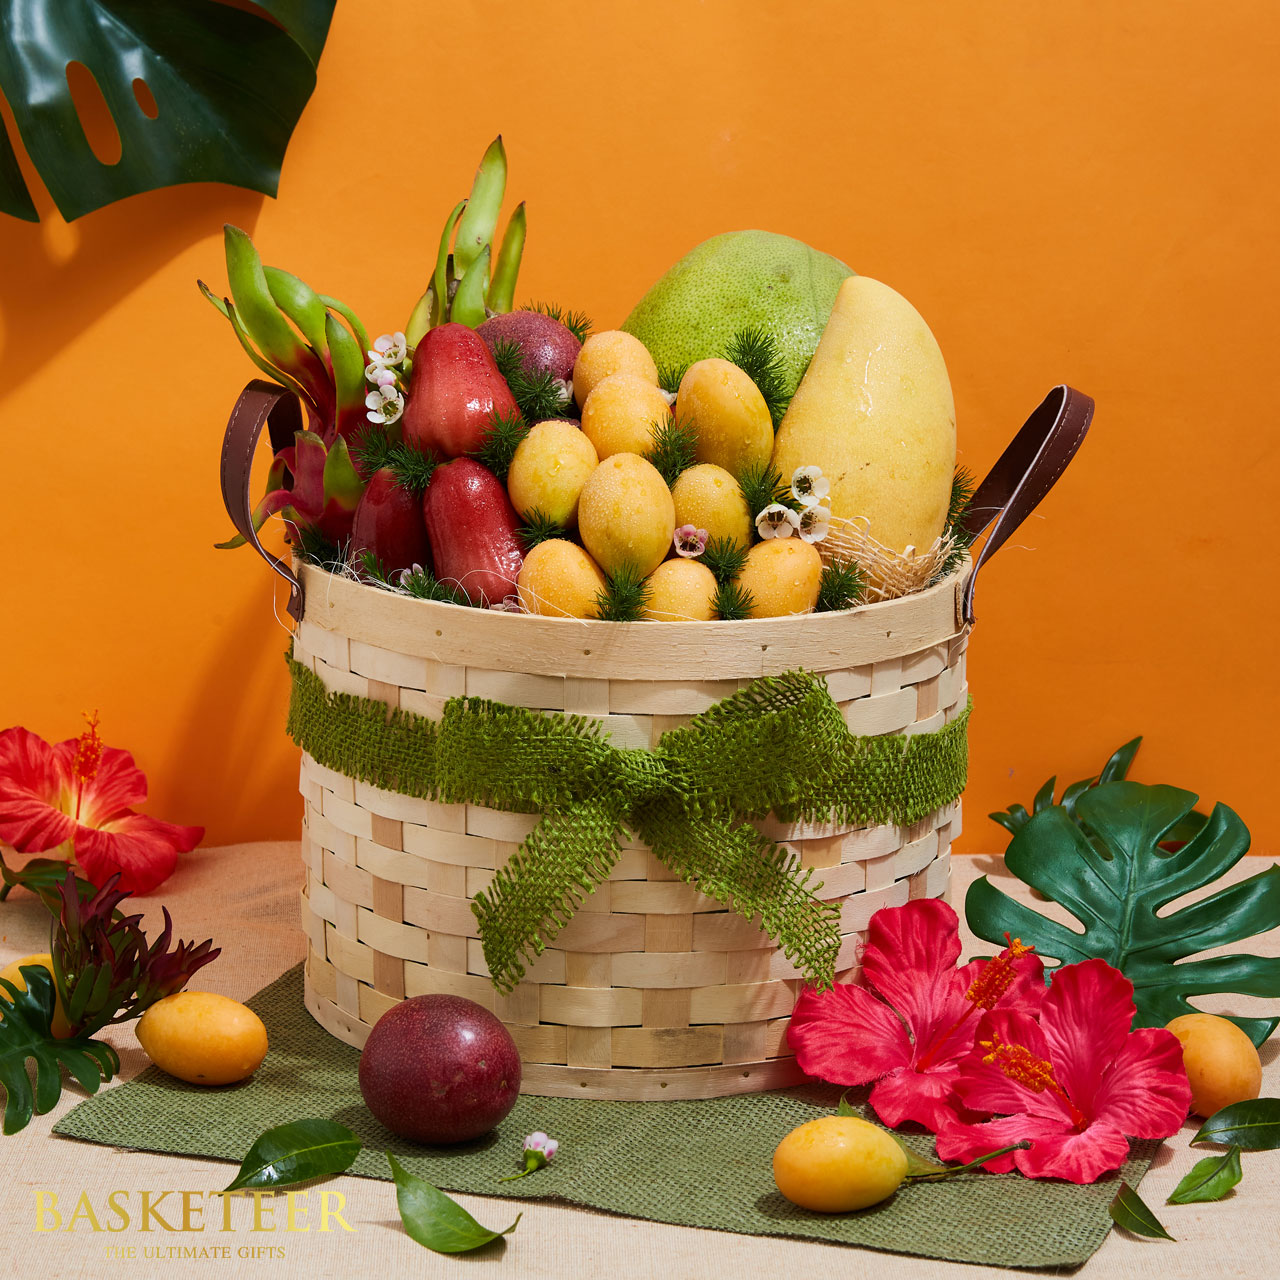 Thai Fruit Basket